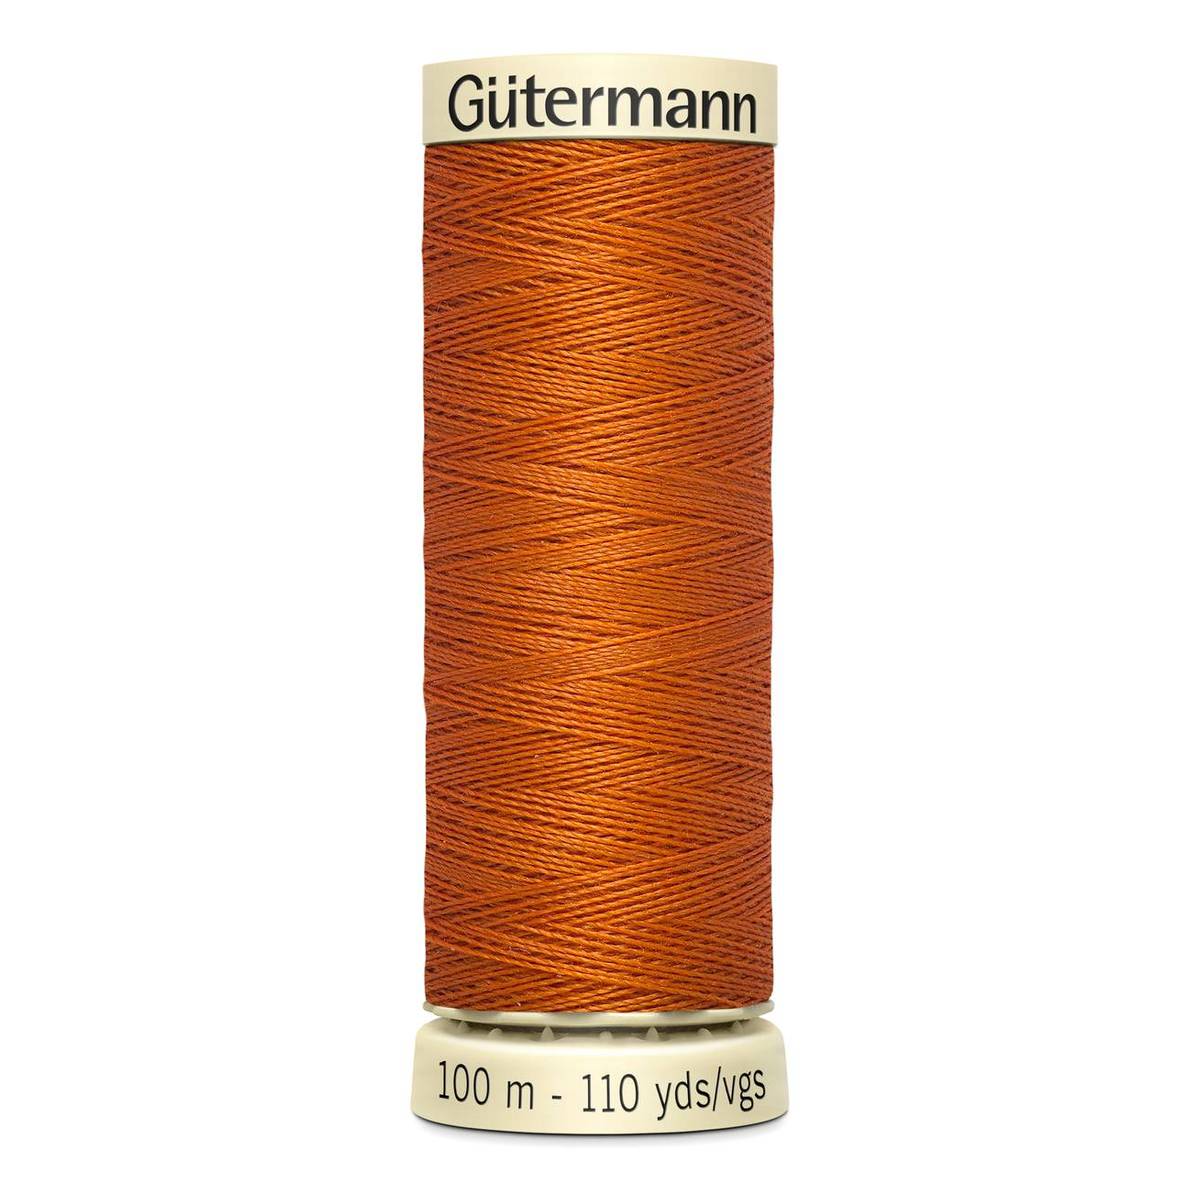 Gutermann Orange Sew All Thread 100m (932)